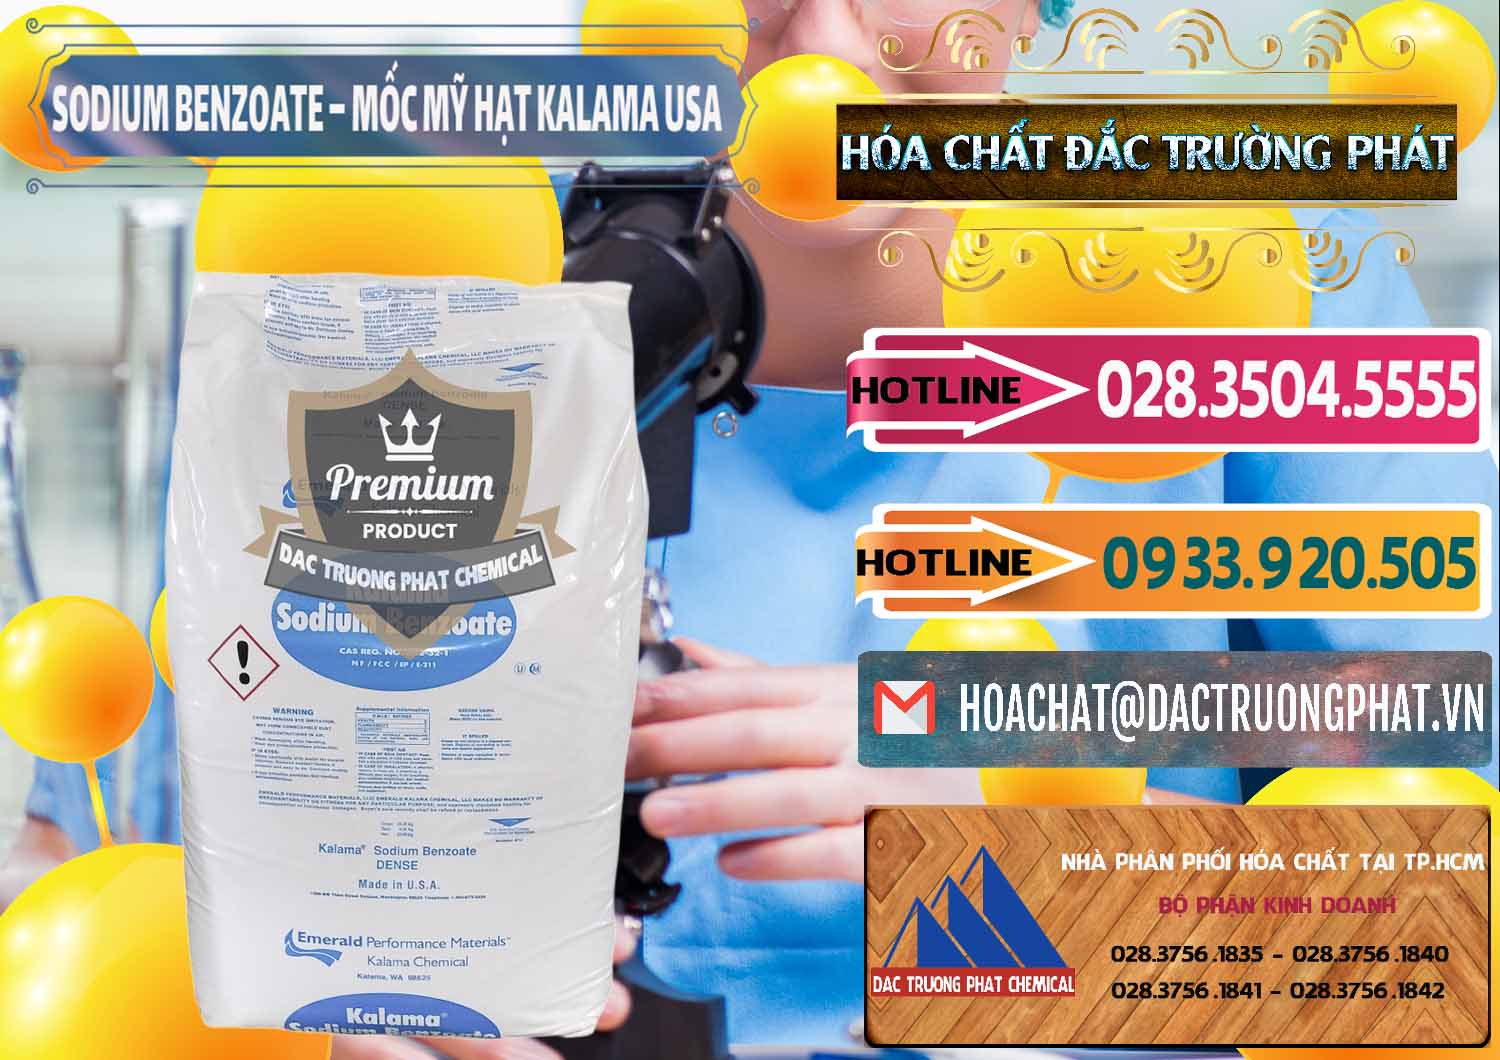 Chuyên bán & cung cấp Sodium Benzoate - Mốc Hạt Kalama Food Grade Mỹ Usa - 0137 - Cty phân phối & kinh doanh hóa chất tại TP.HCM - dactruongphat.vn